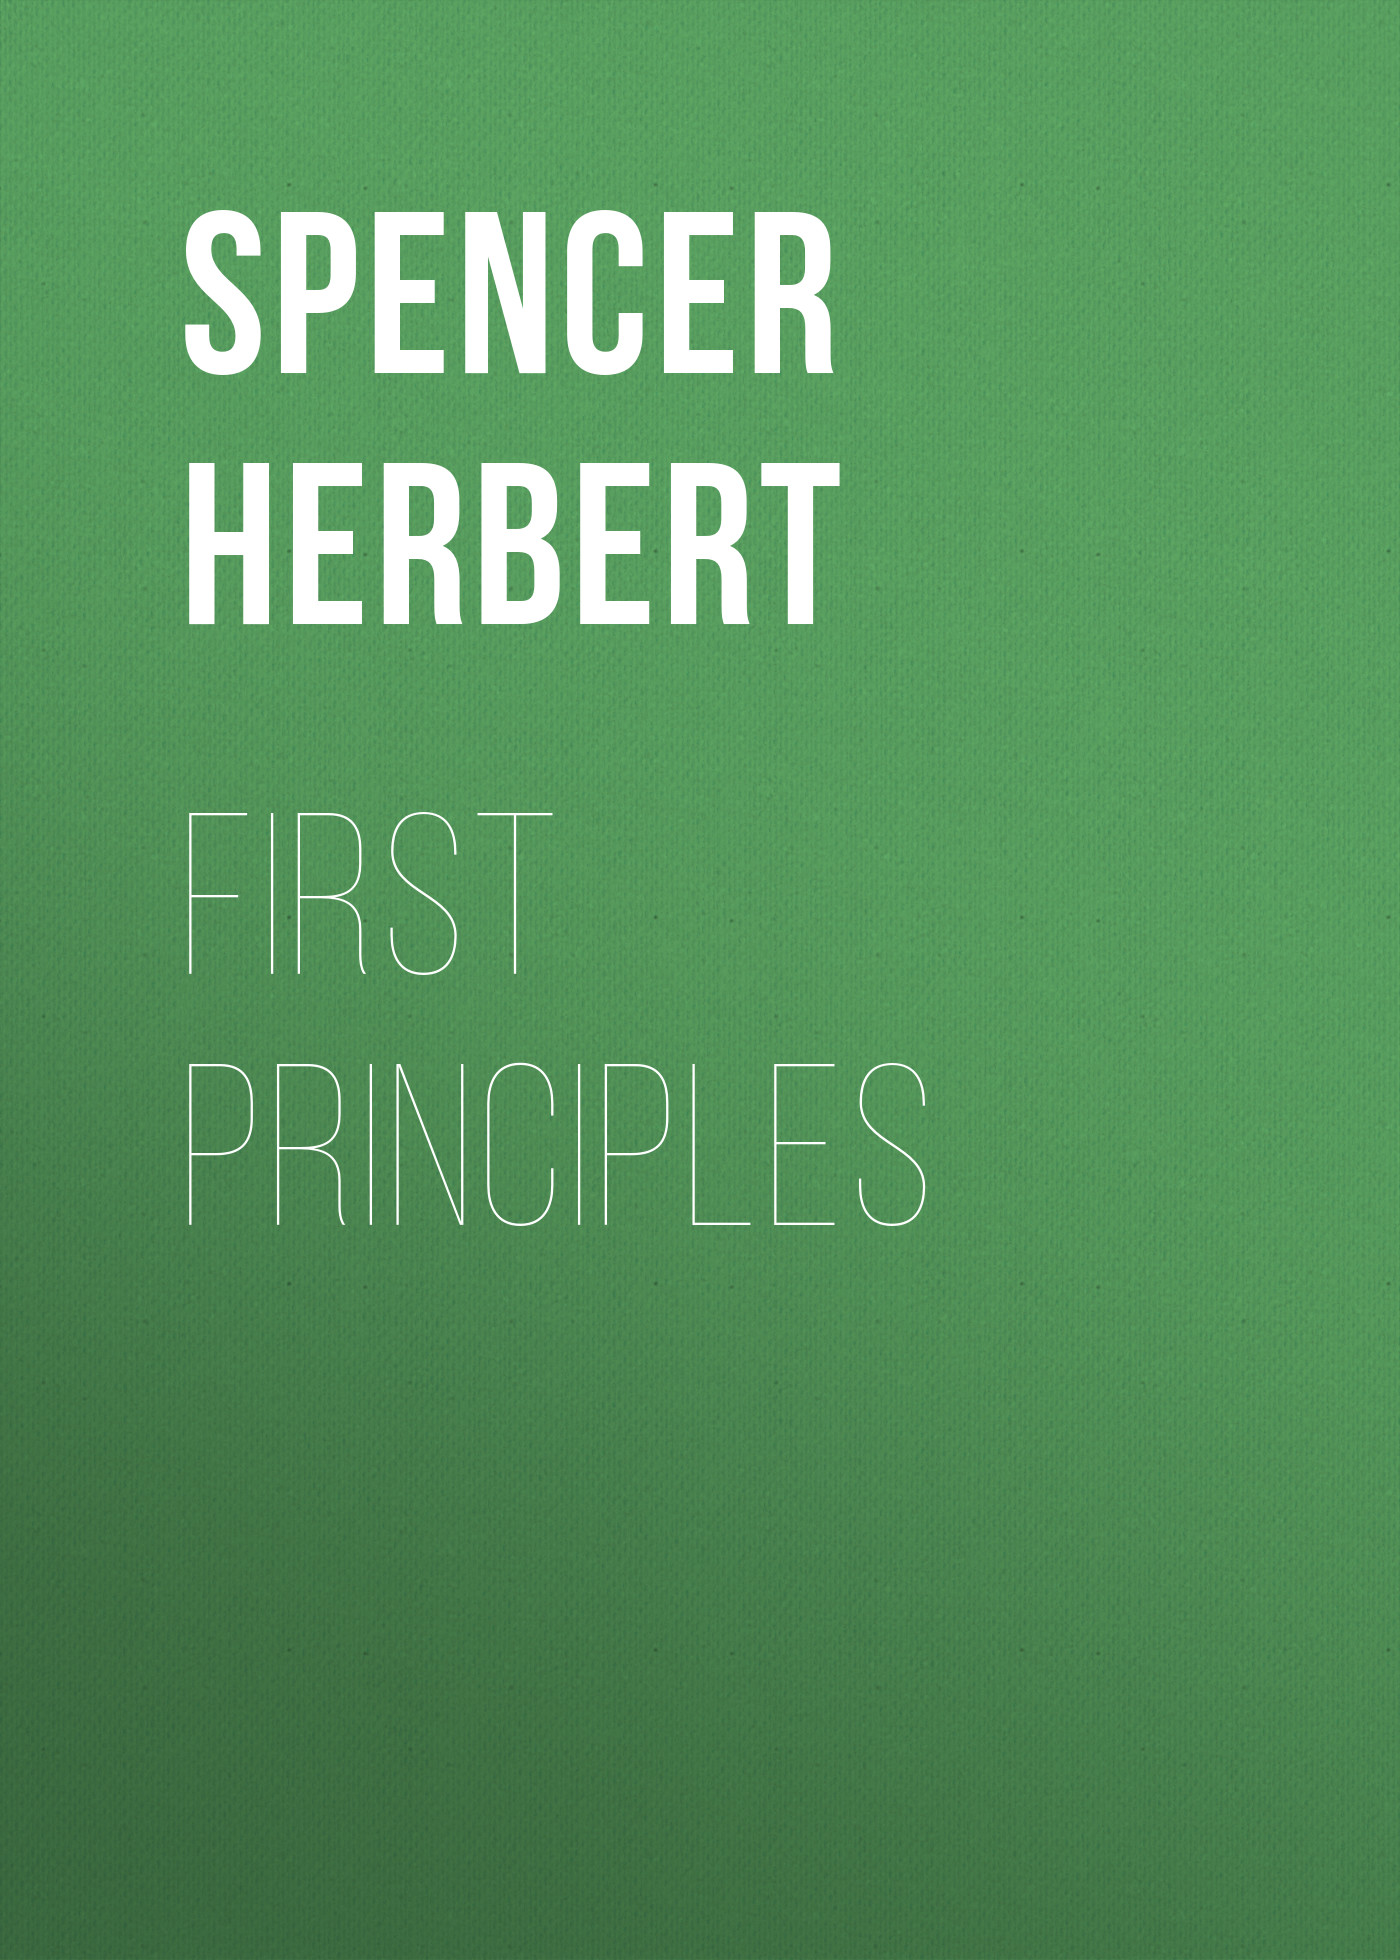 Книга First Principles из серии , созданная Herbert Spencer, может относится к жанру Философия, Зарубежная старинная литература, Зарубежная классика. Стоимость электронной книги First Principles с идентификатором 25476079 составляет 0 руб.